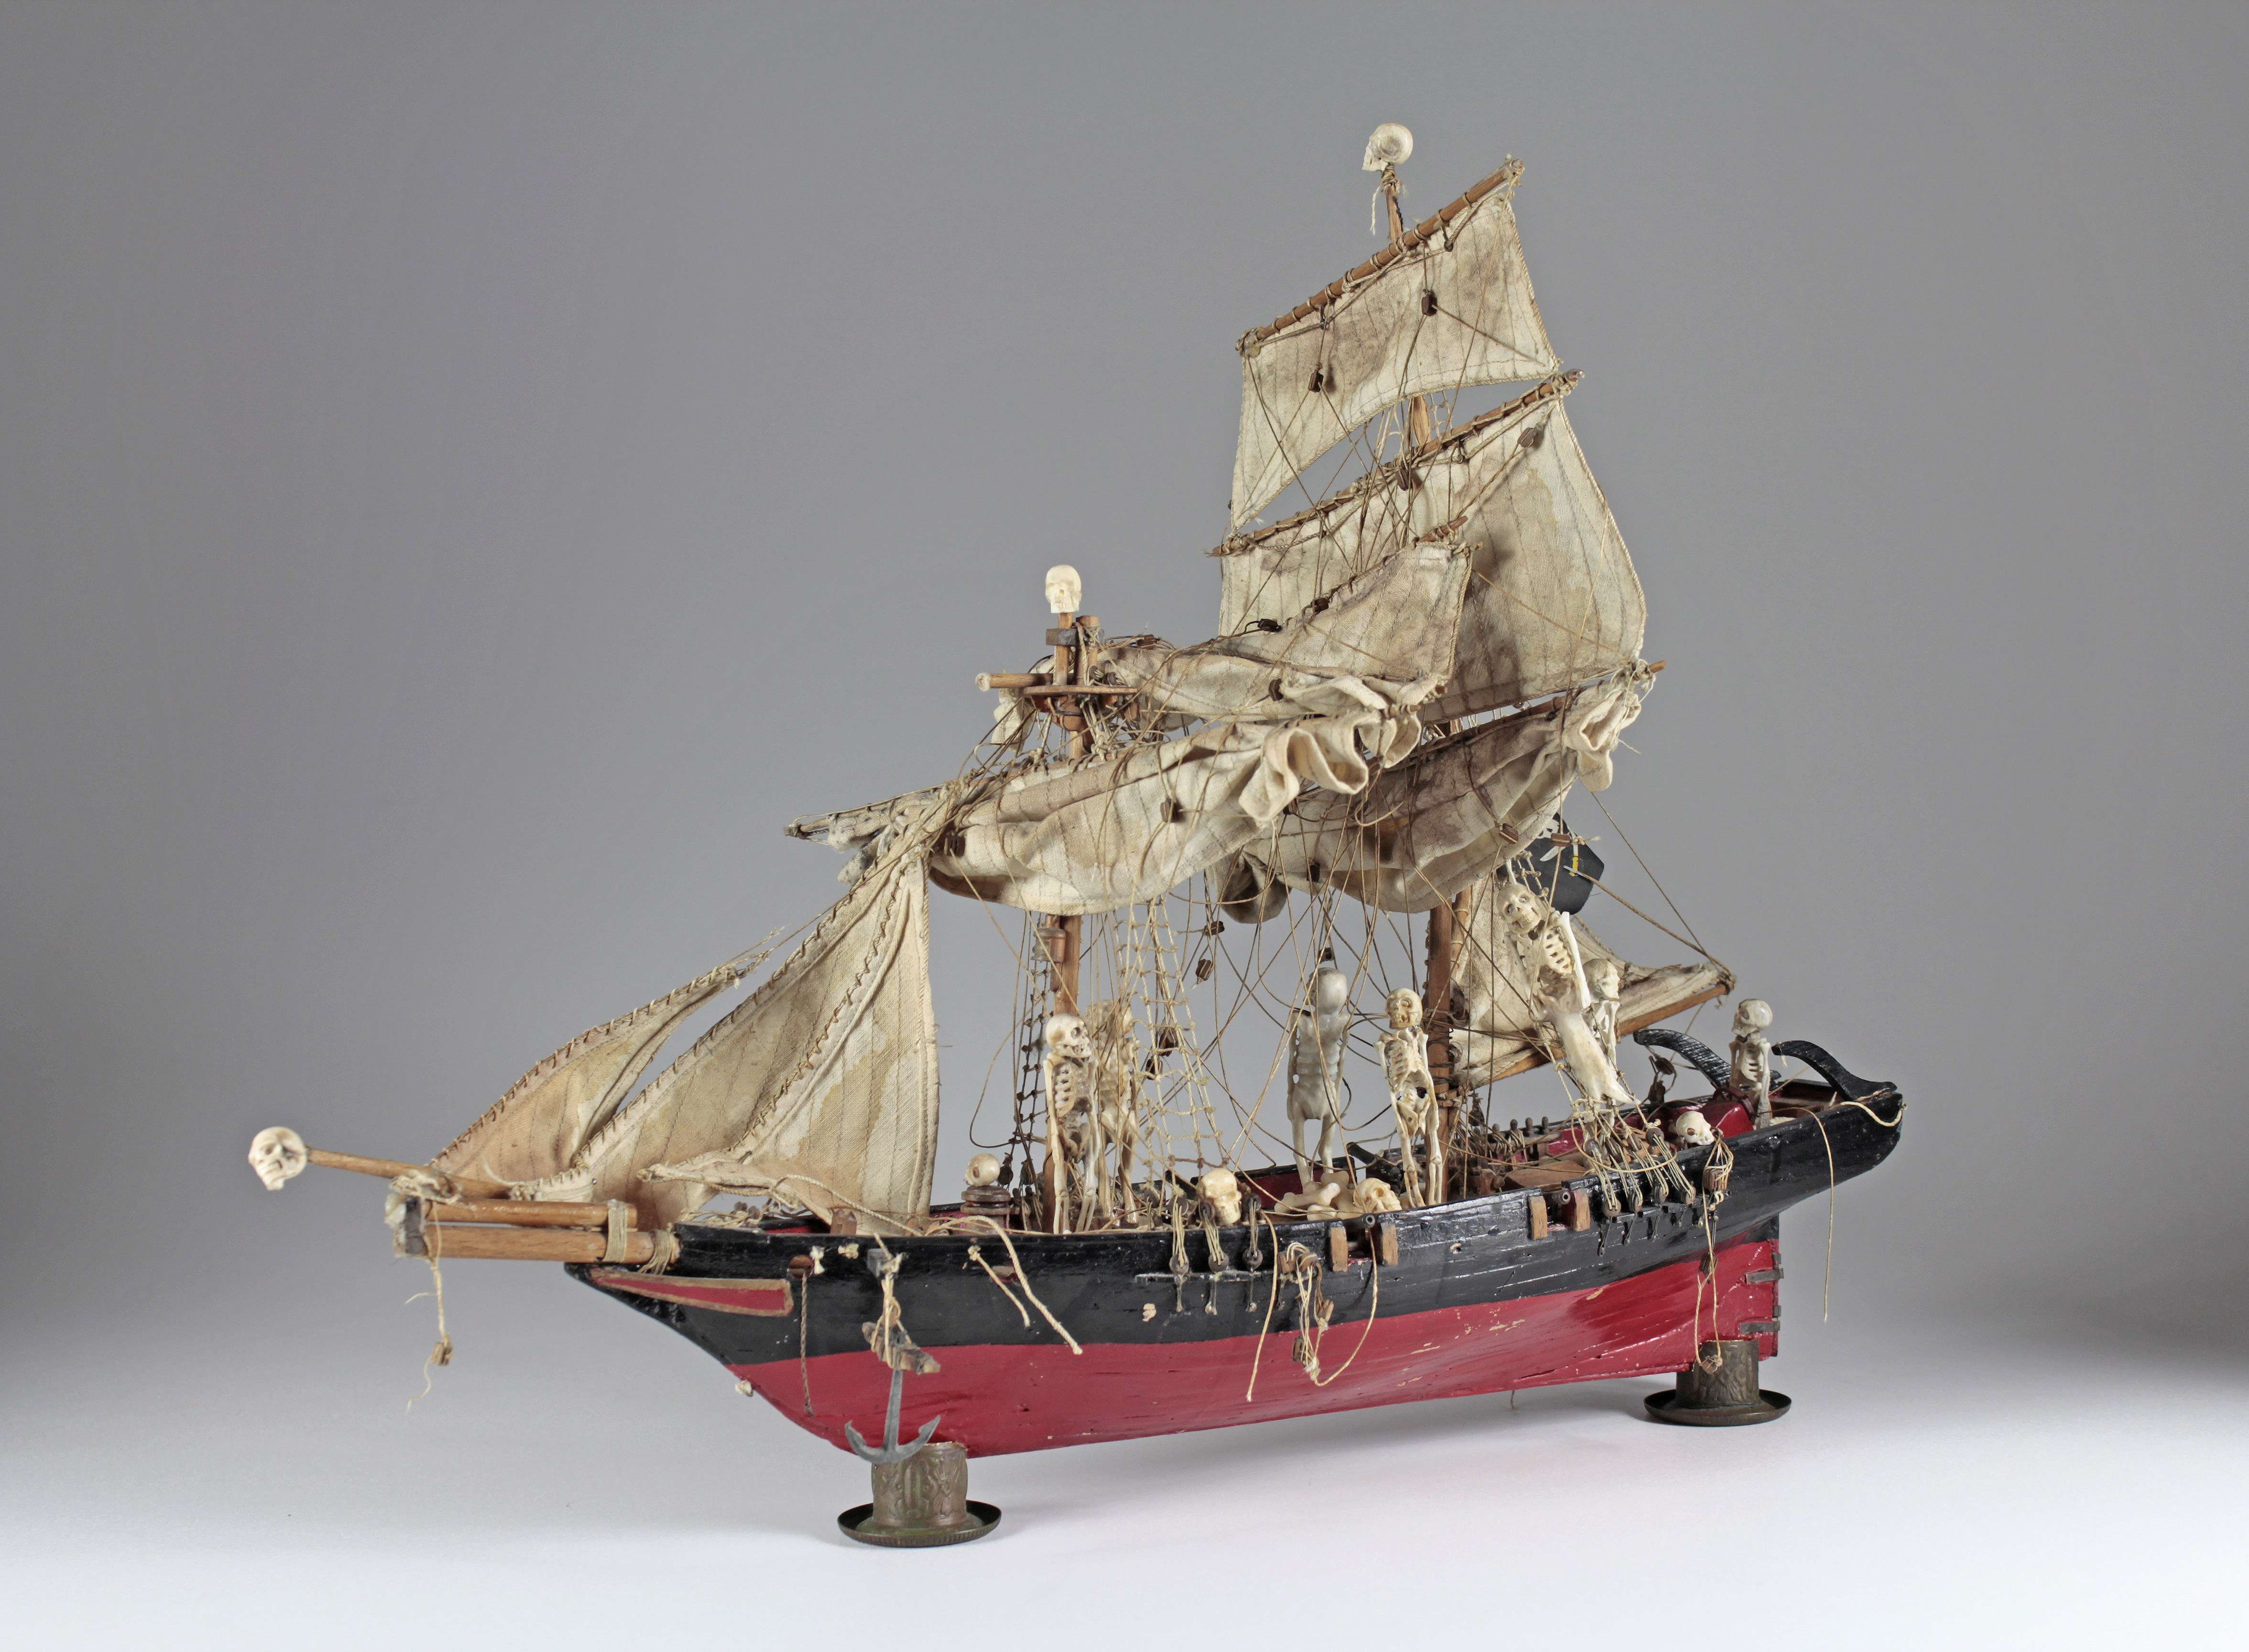 Totenschiff. Seemannsarbeit, 20. Jahrhundert, Schiffsmodell, Holz, Metall und Leinen, teilweise